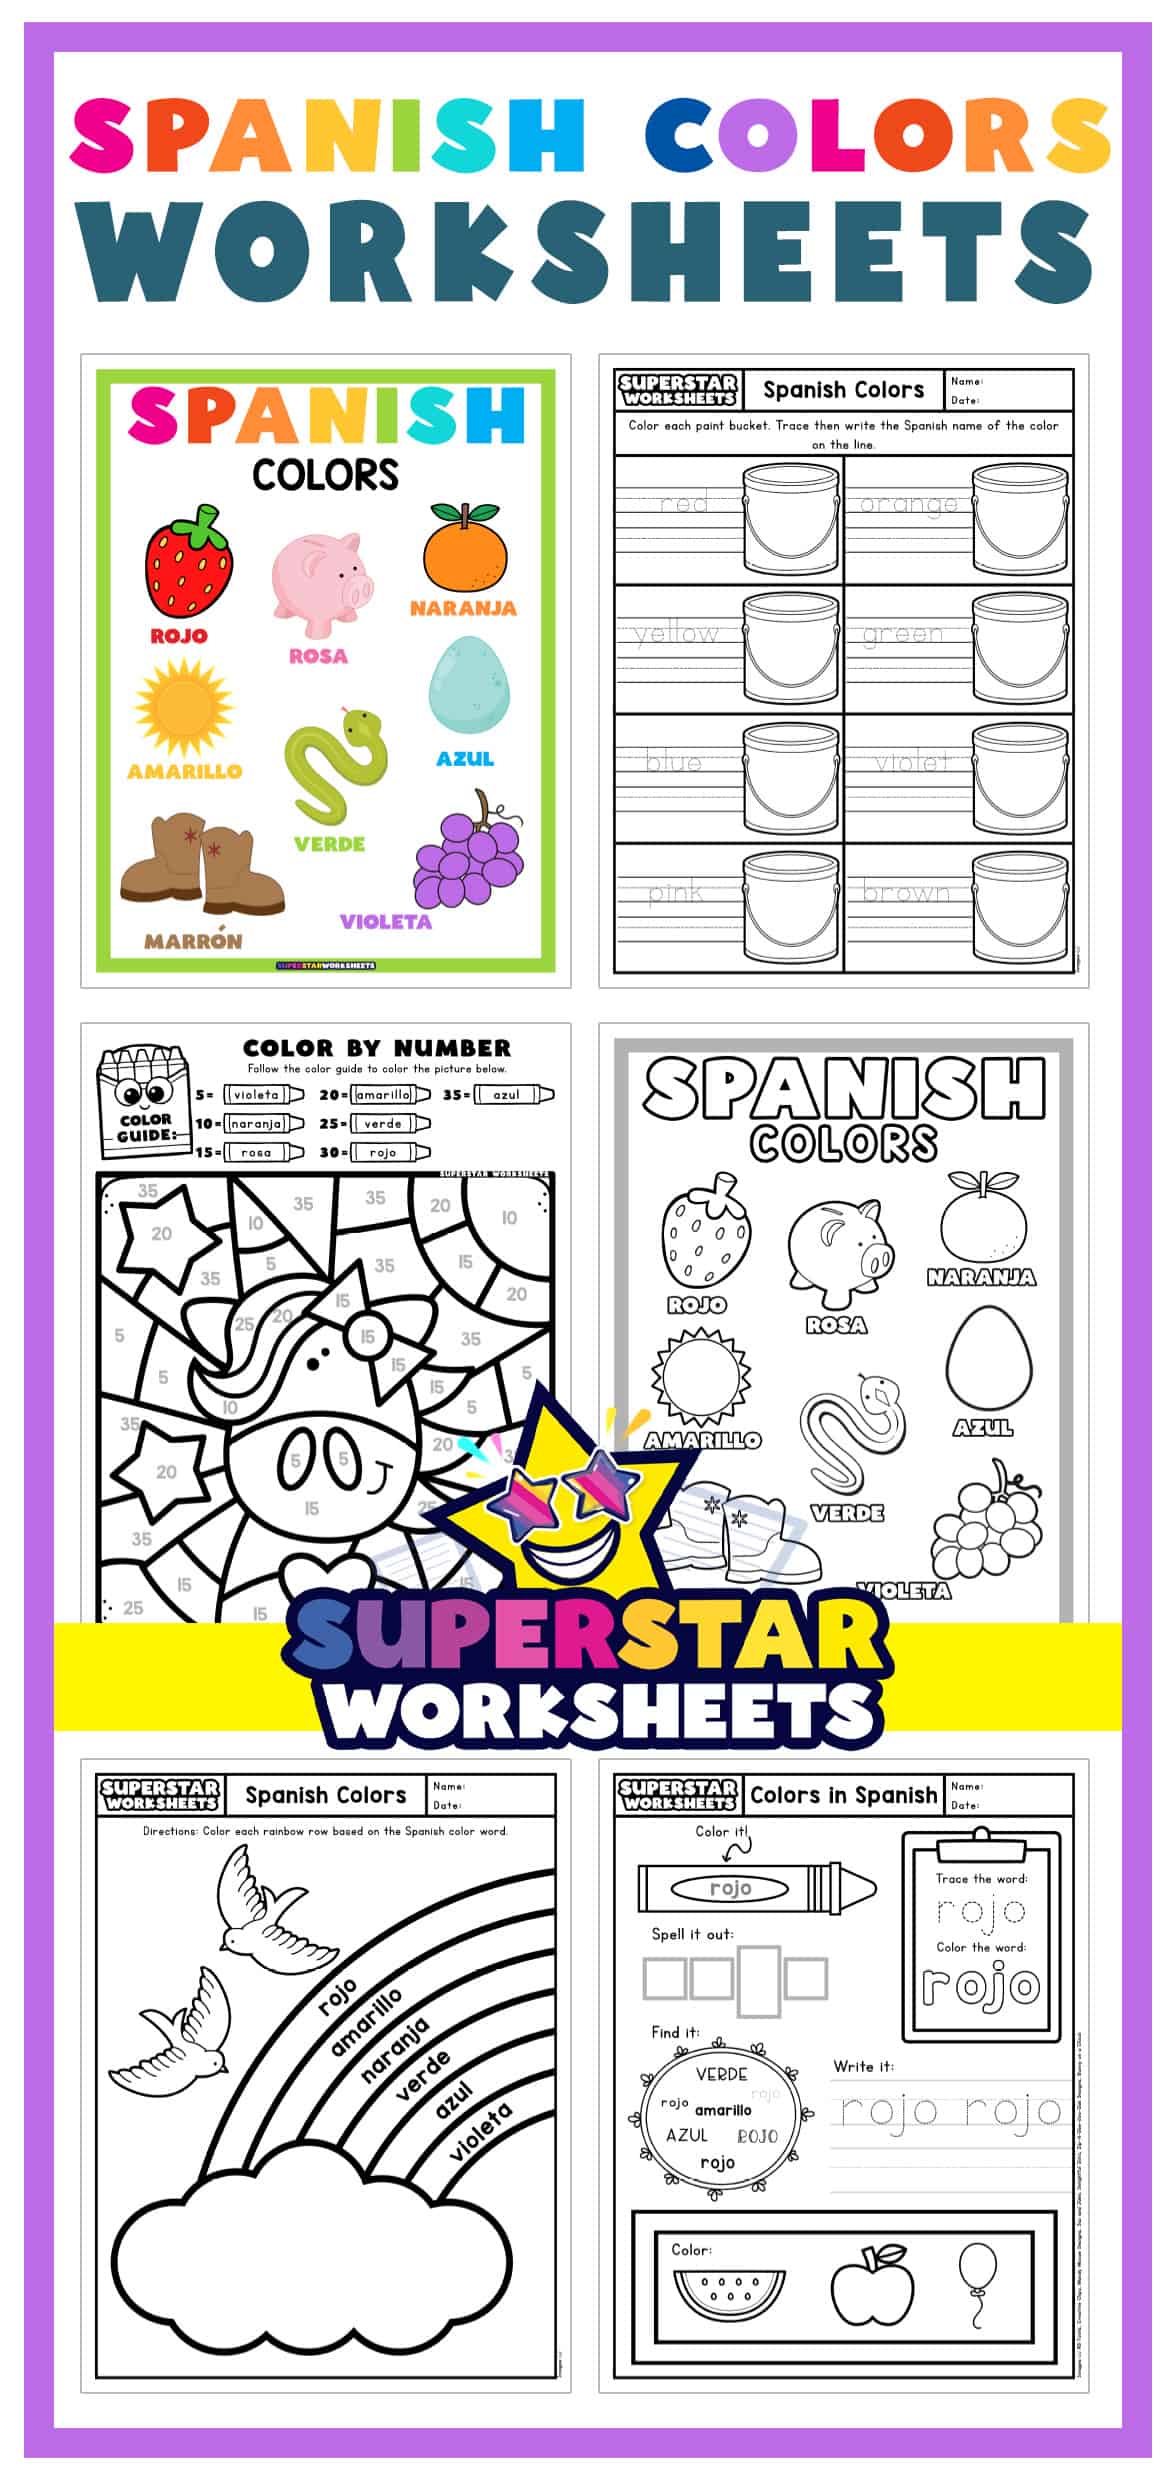 spanish-color-worksheets-superstar-worksheets